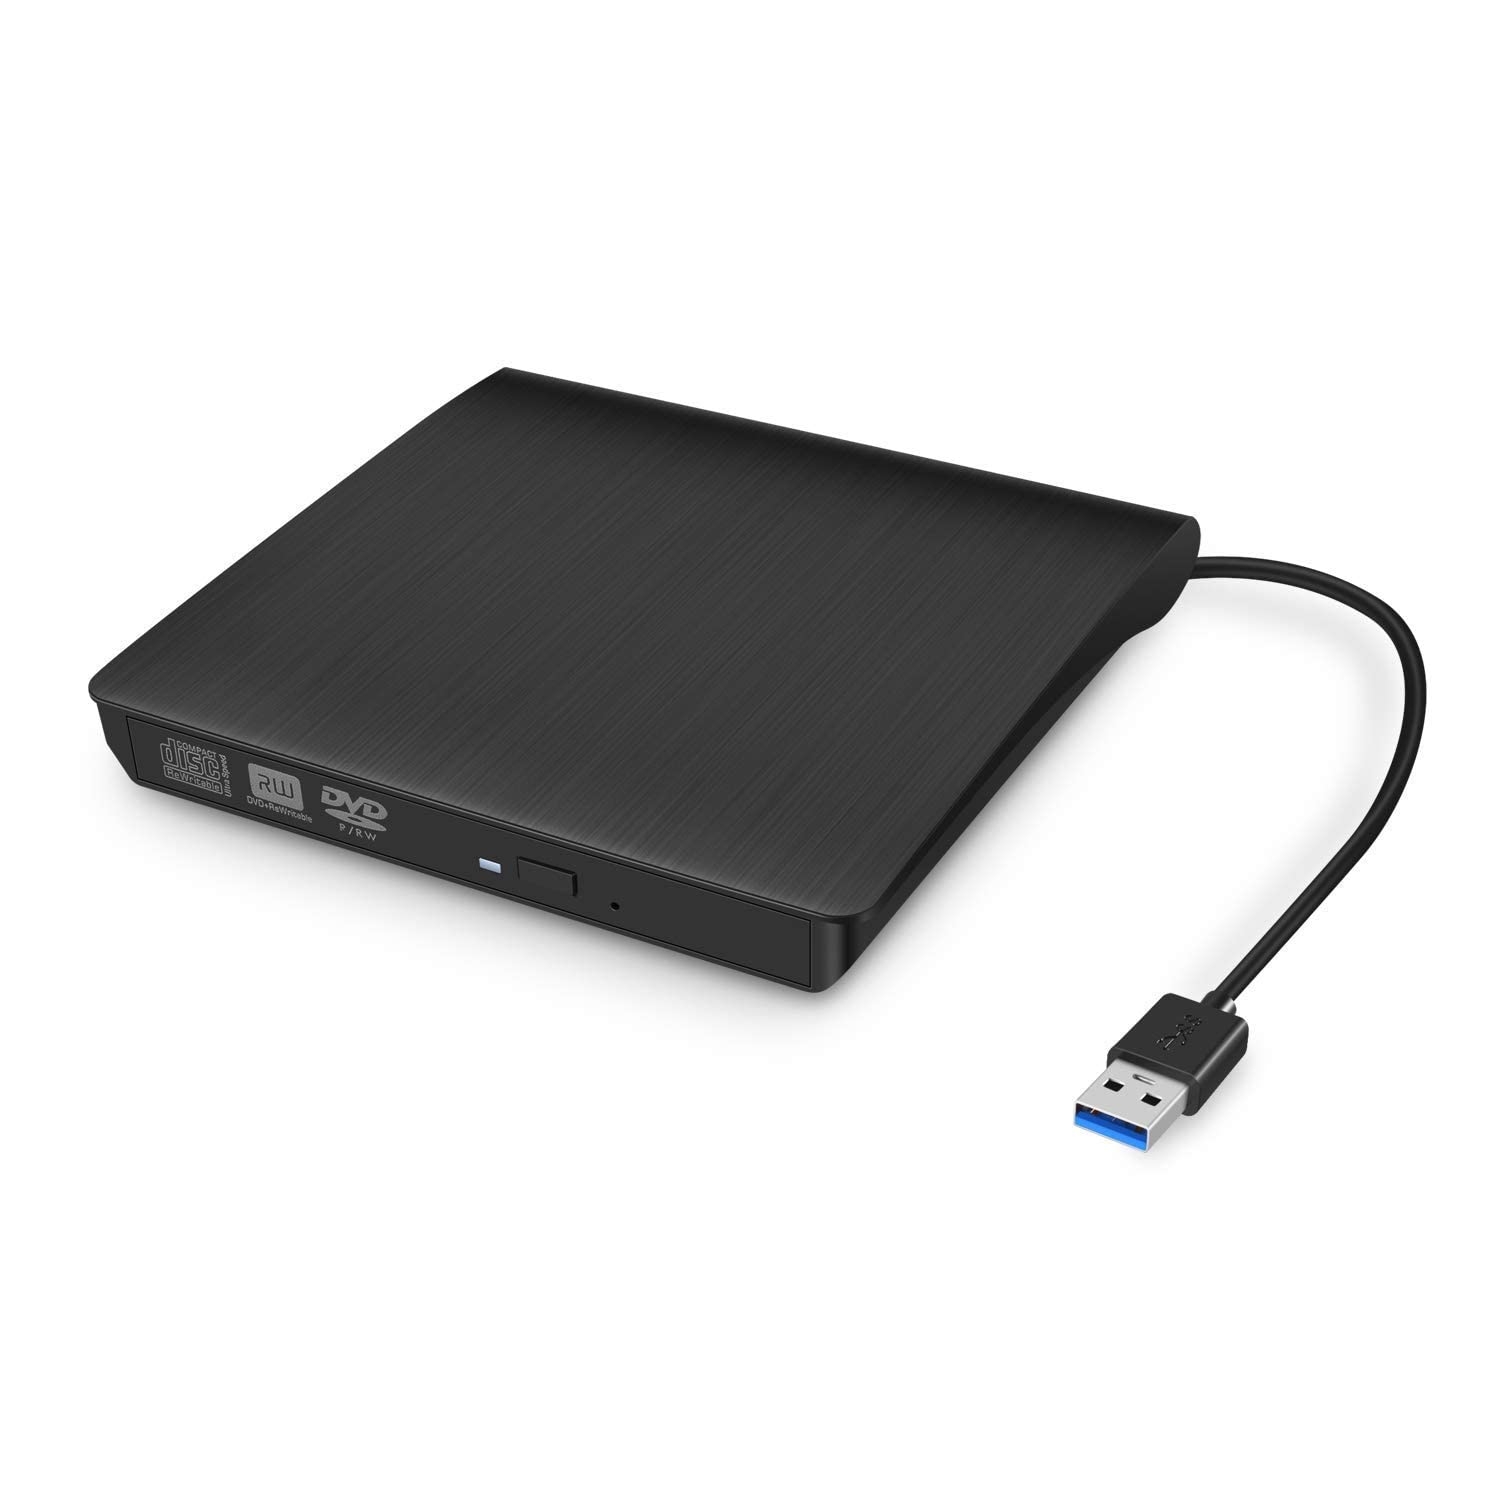 Technotech Hi-Speed External CD Drive, USB 3.0 Slim Portable External DVD Drive for Laptop MacBook Pro